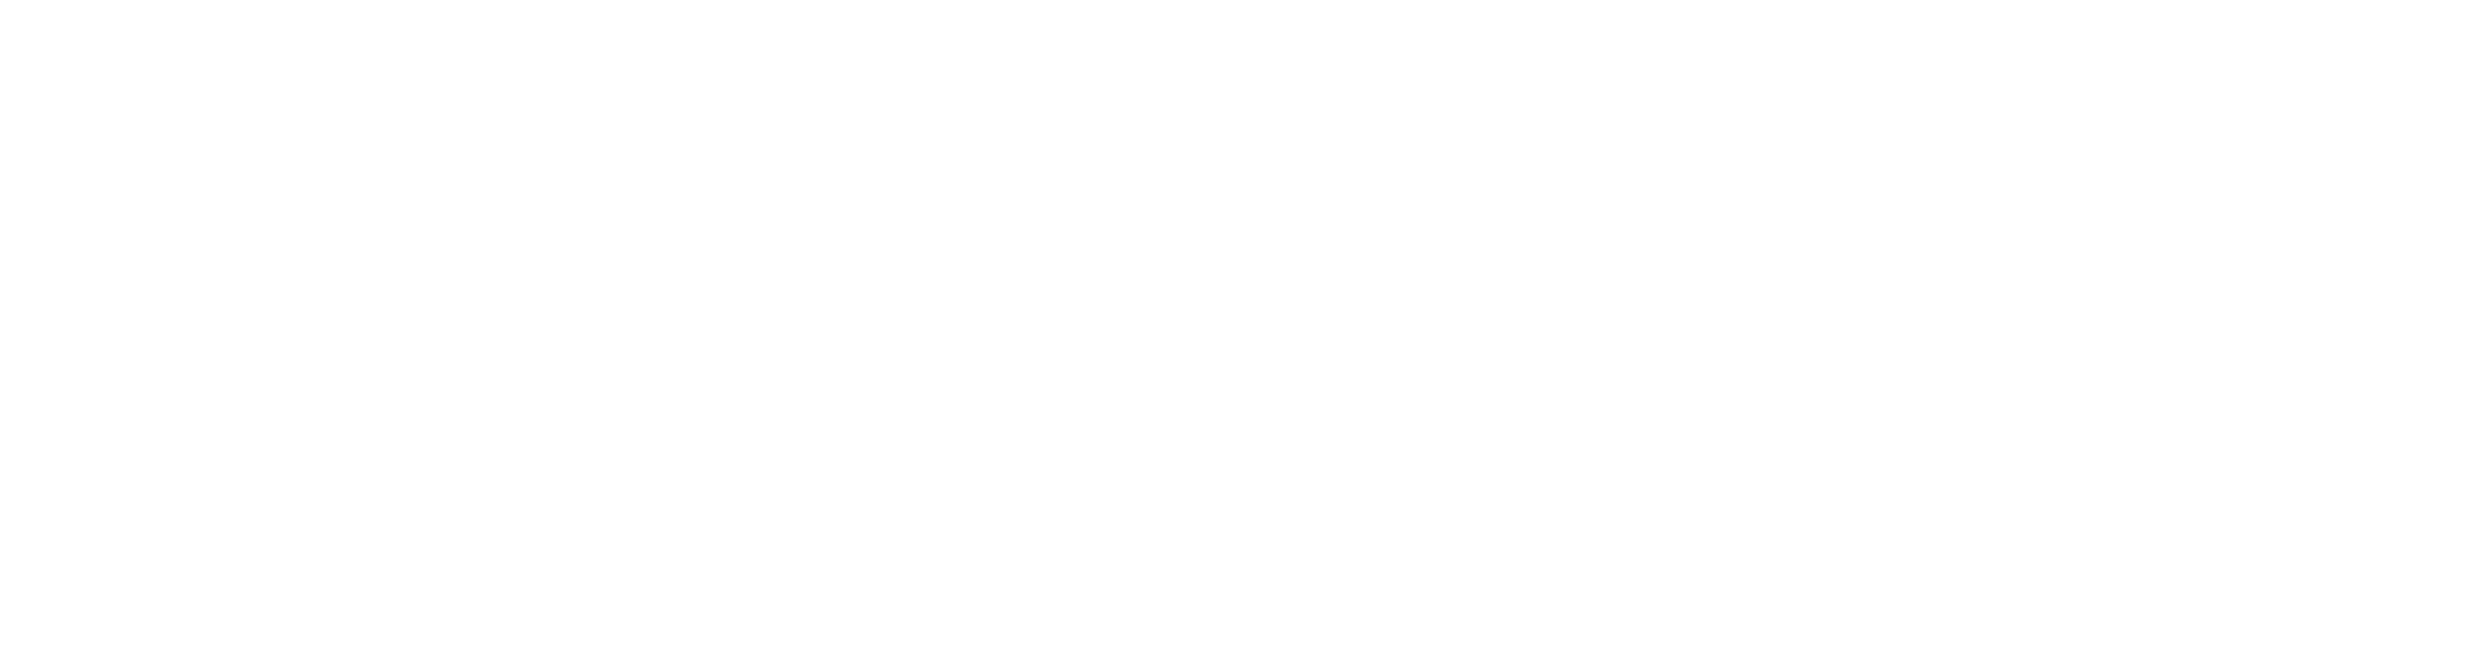 TriBridge Residential